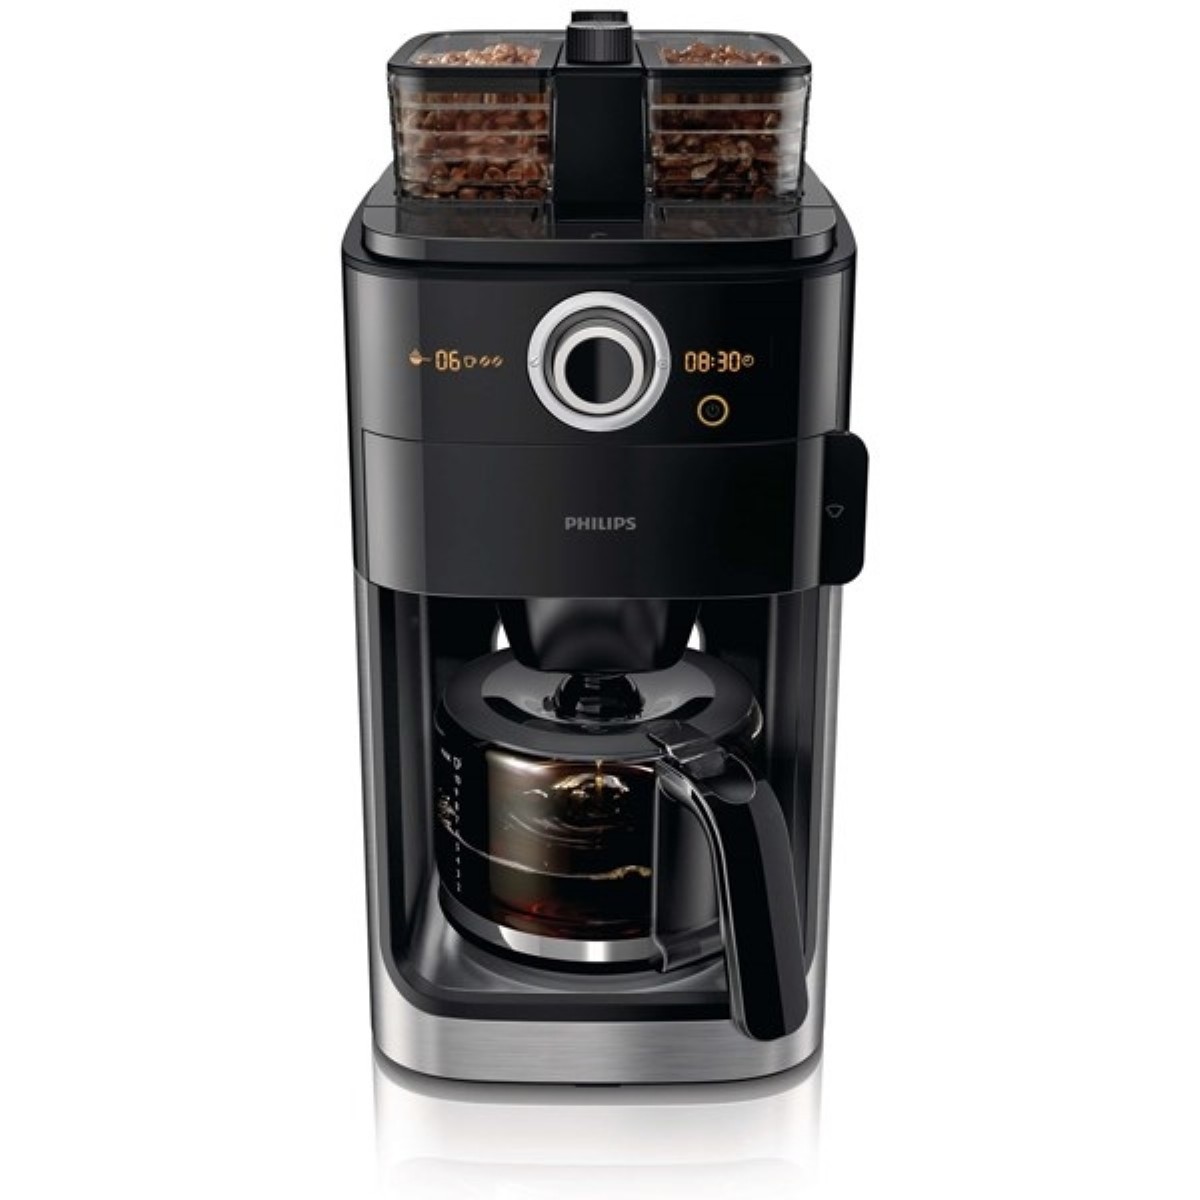 Filtre Kahve Makinesi | Philips HD7769/00 Öğütücülü Filtre Kahve Makinesi | HD7769/00 | HD7769/00, philips filtre kahve makinesi, filtre kahve, Philips HD7769/00 Öğütücülü Filtre Kahve Makinesi | 